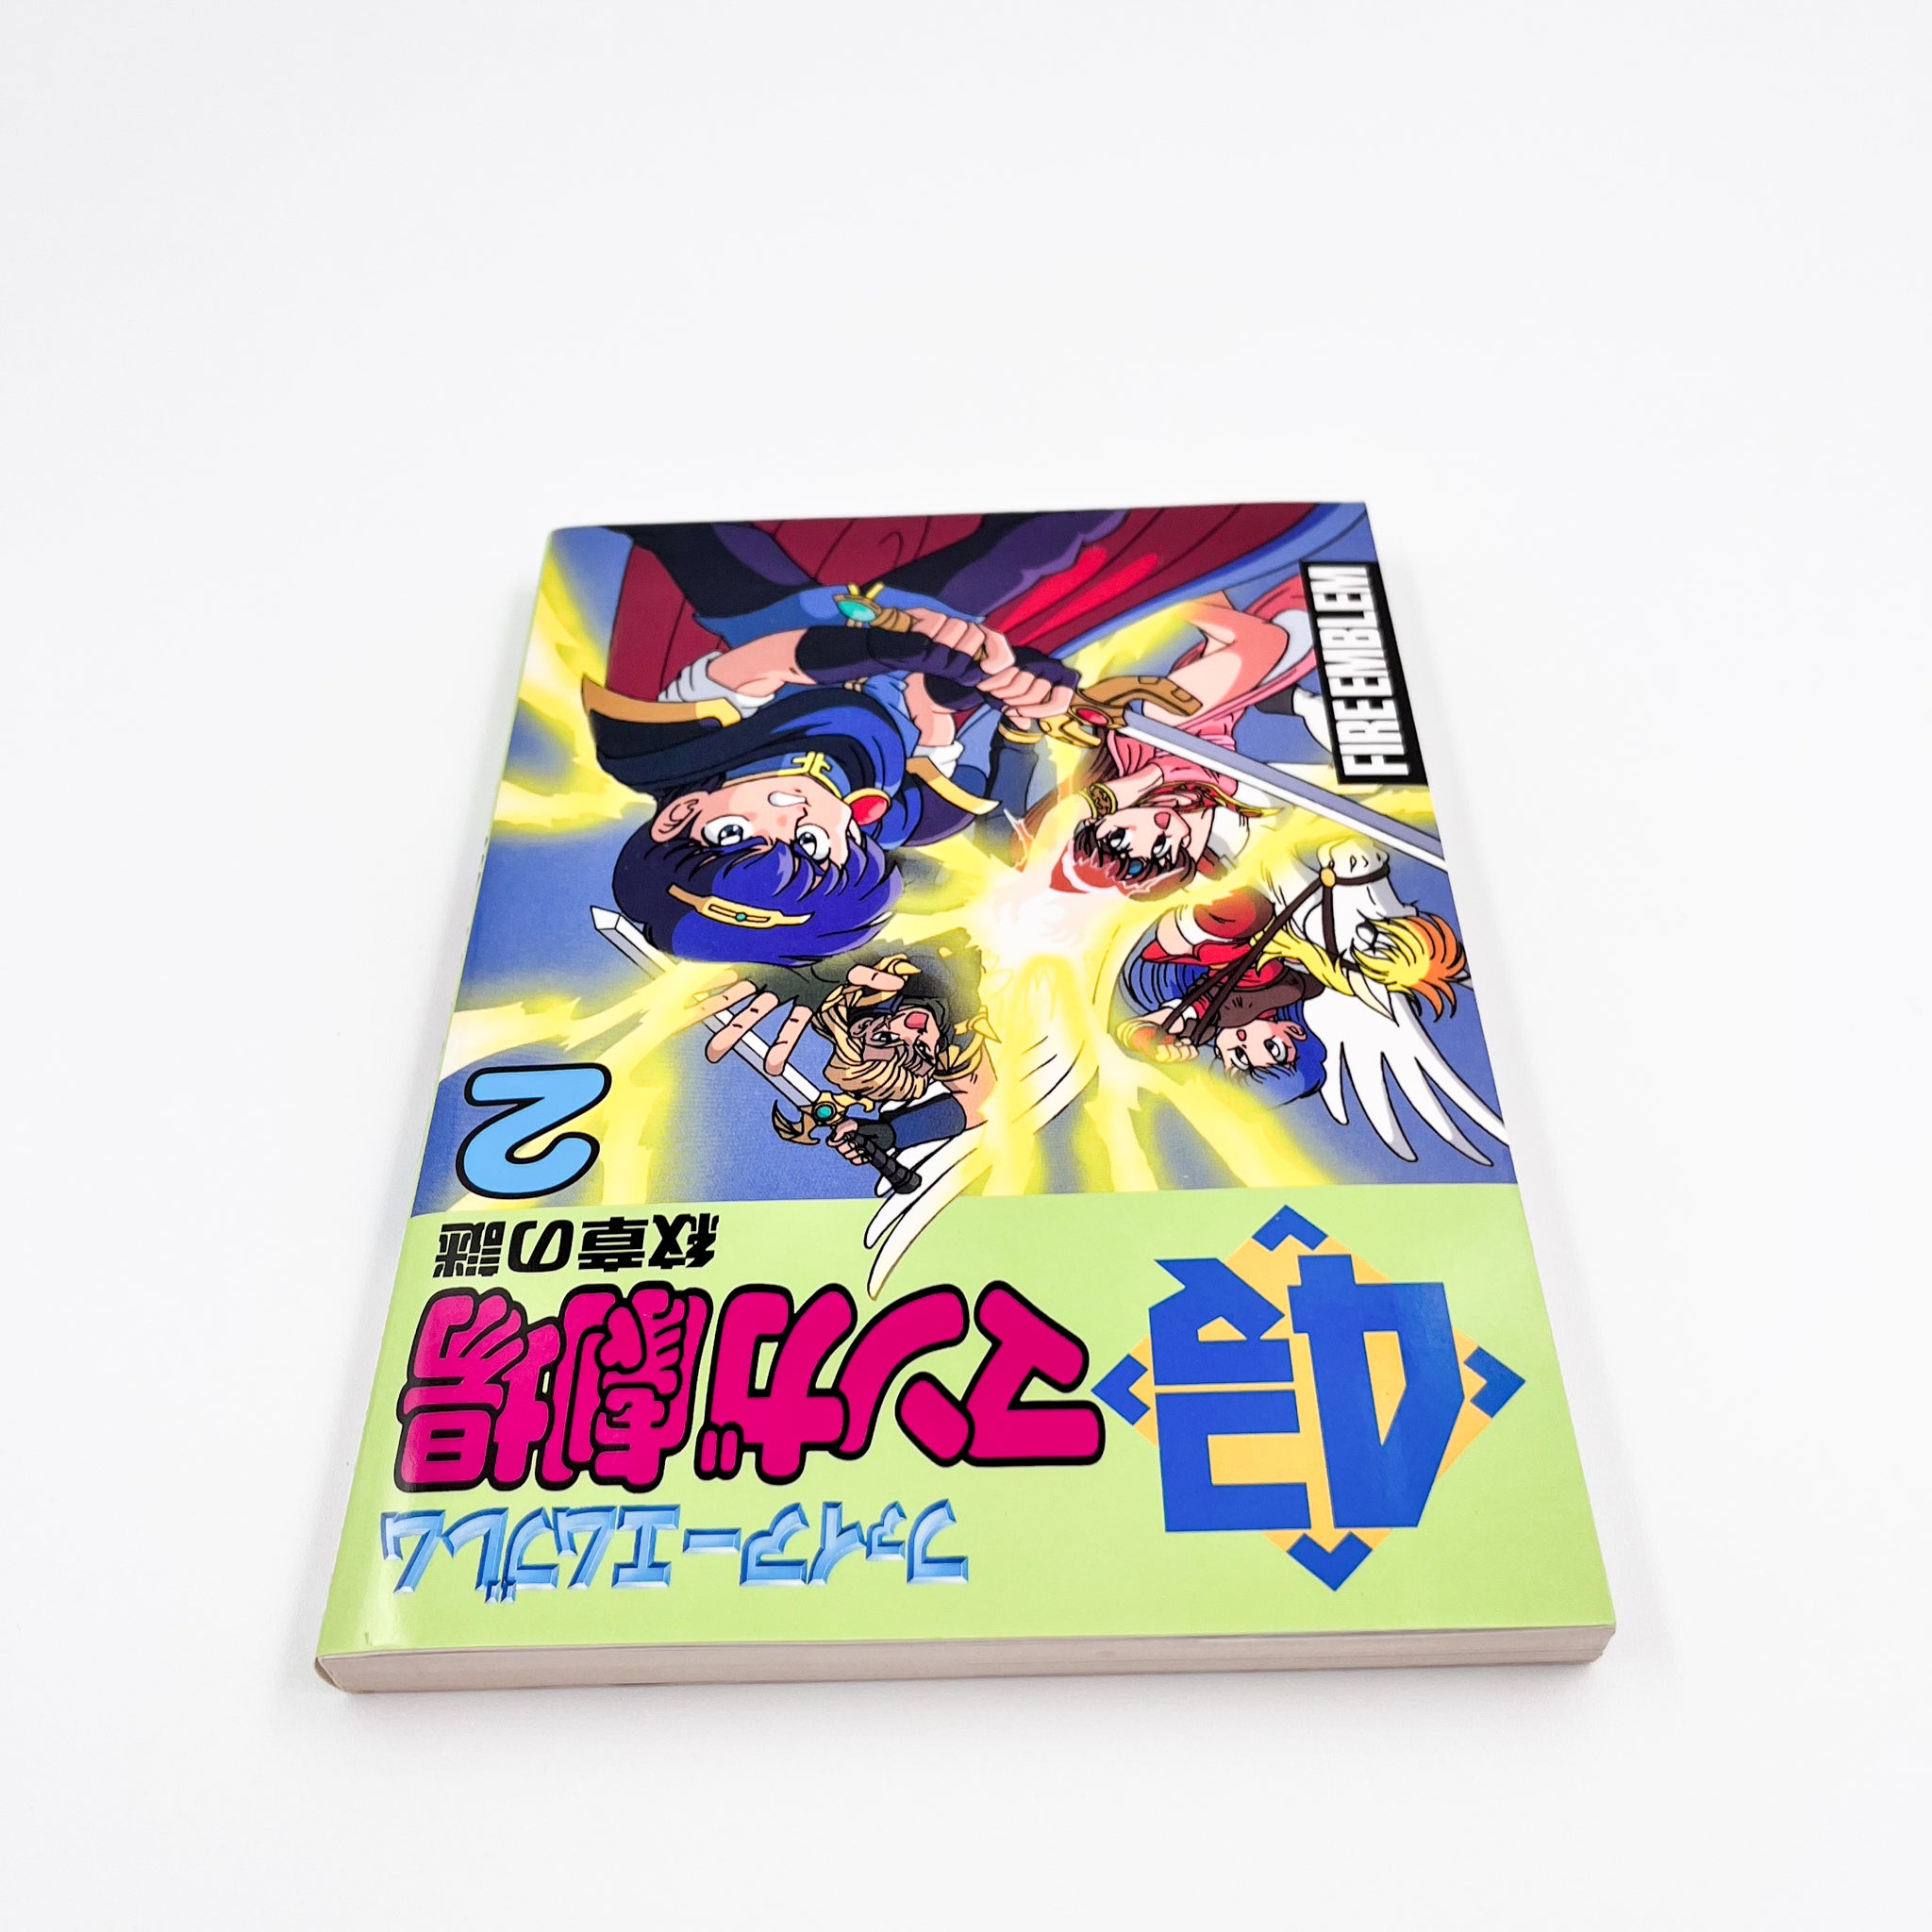 Fire Emblem 4koma Manga Theater Volume 2 Back